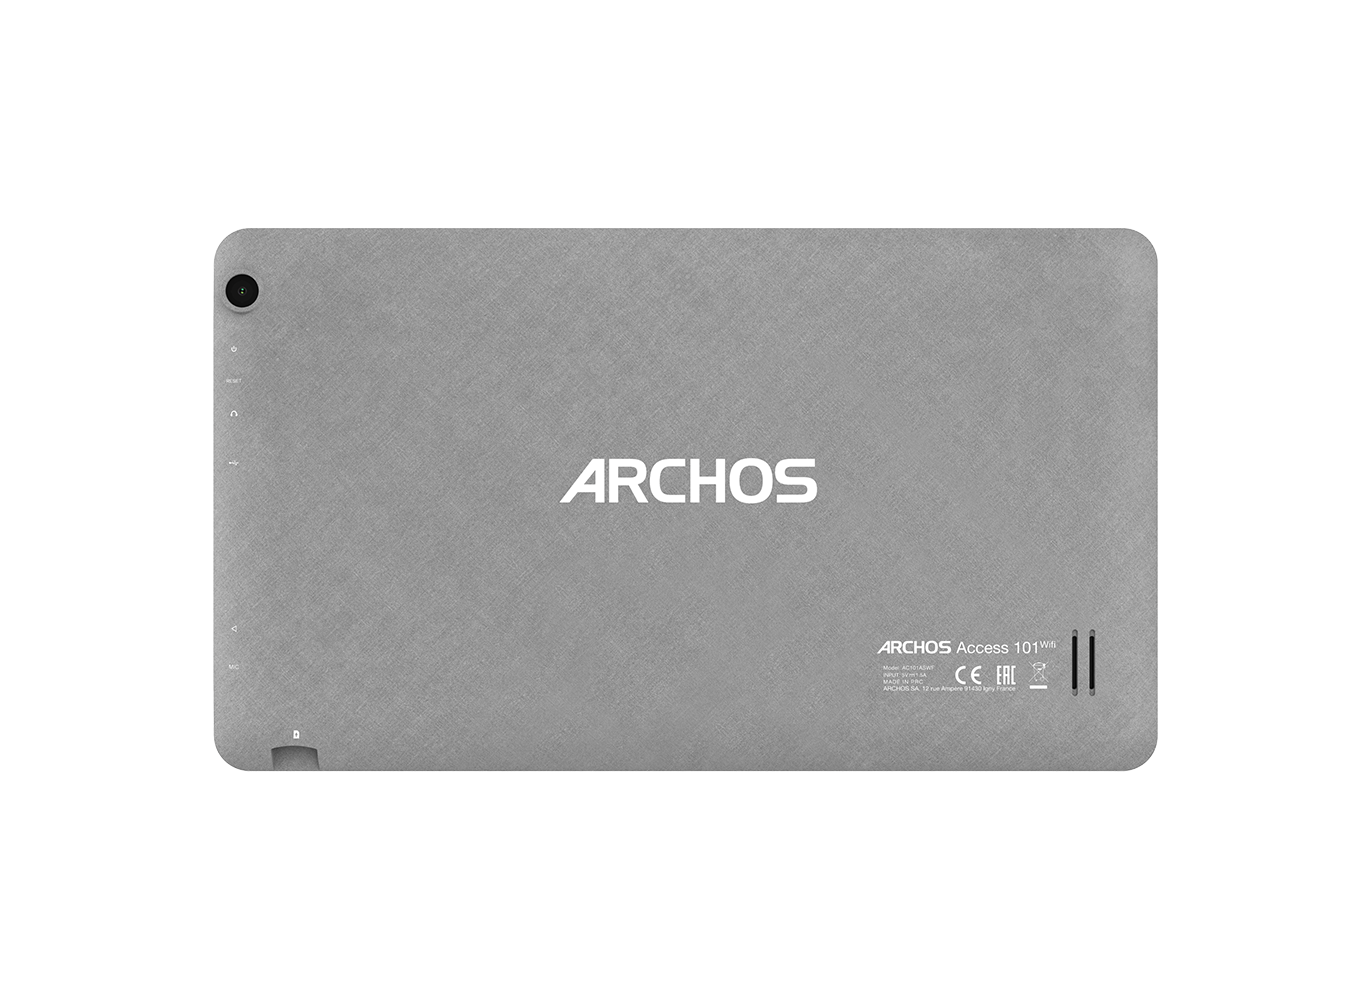 ARCHOS Access 101 WiFi – ARCHOS